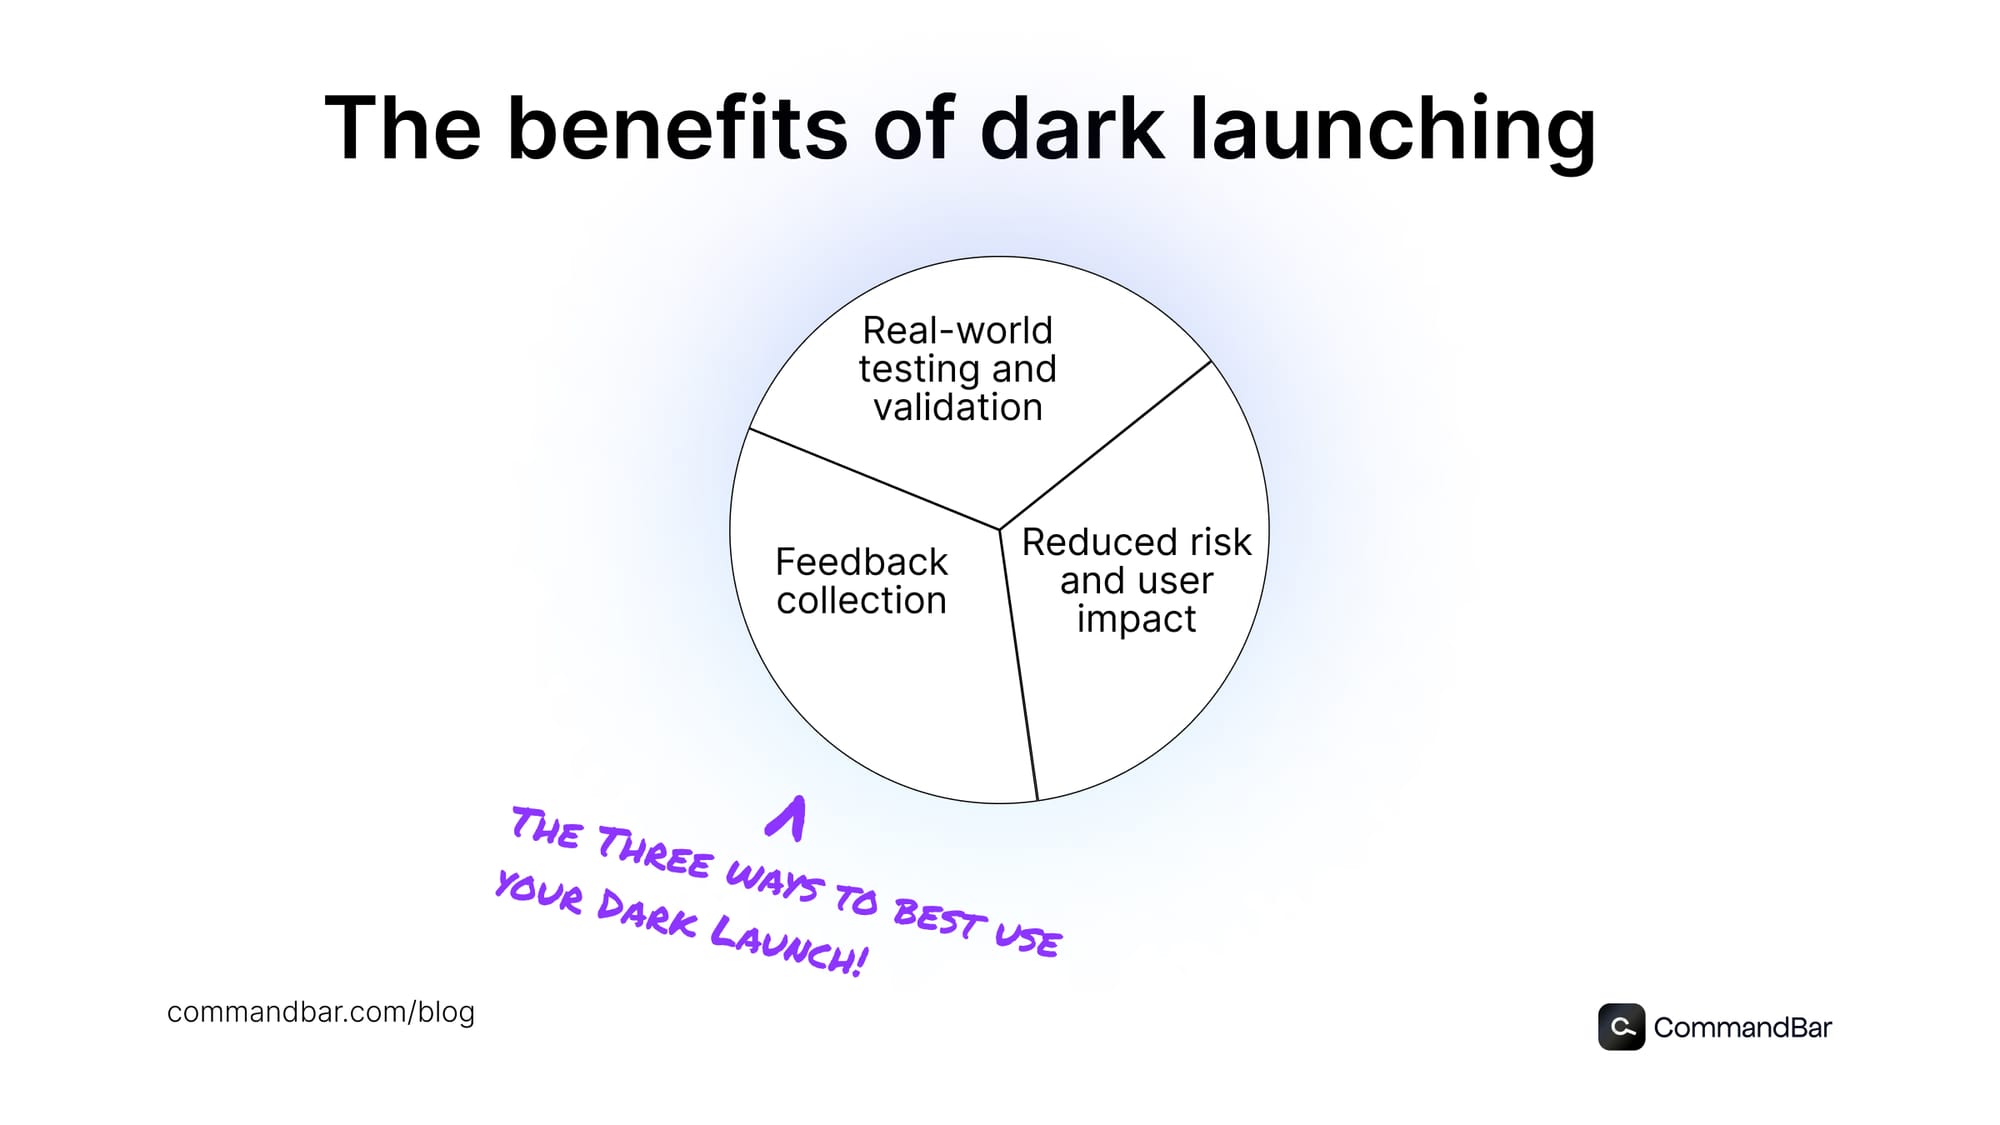 Benefits of dark launching